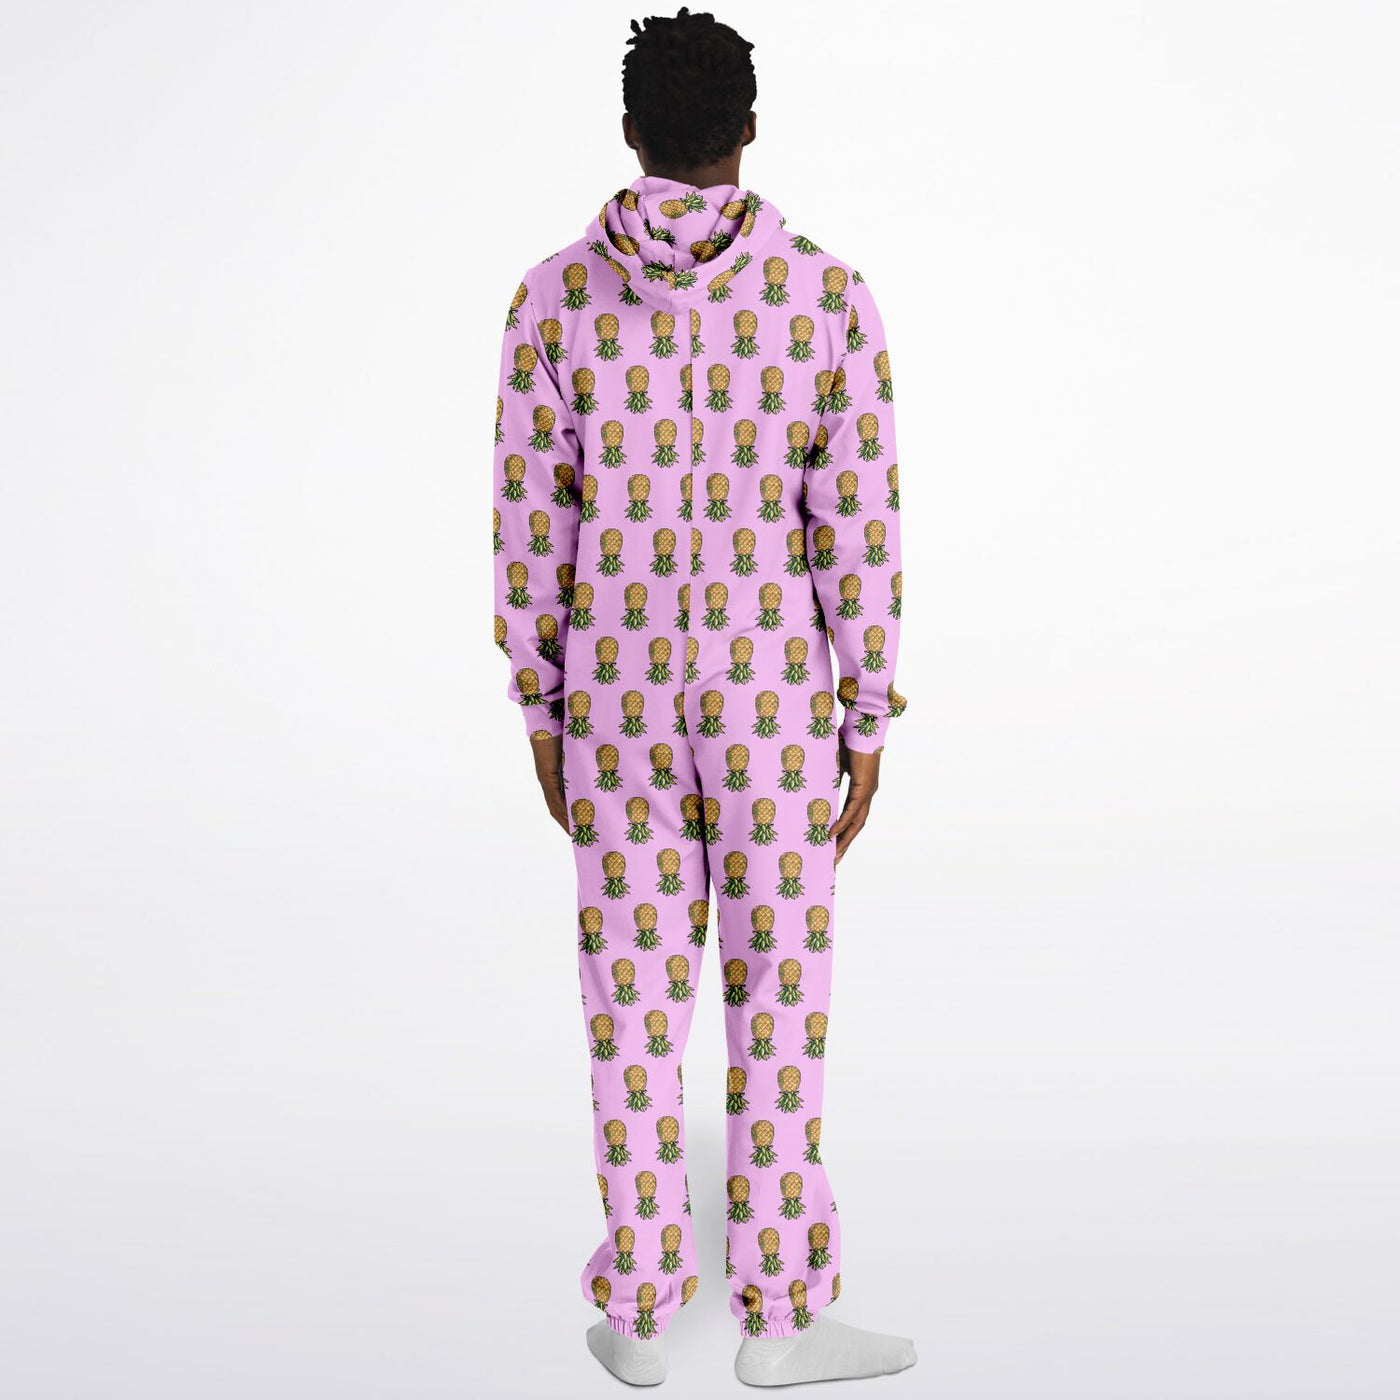 8-BIT pink Fashion Jumpsuit